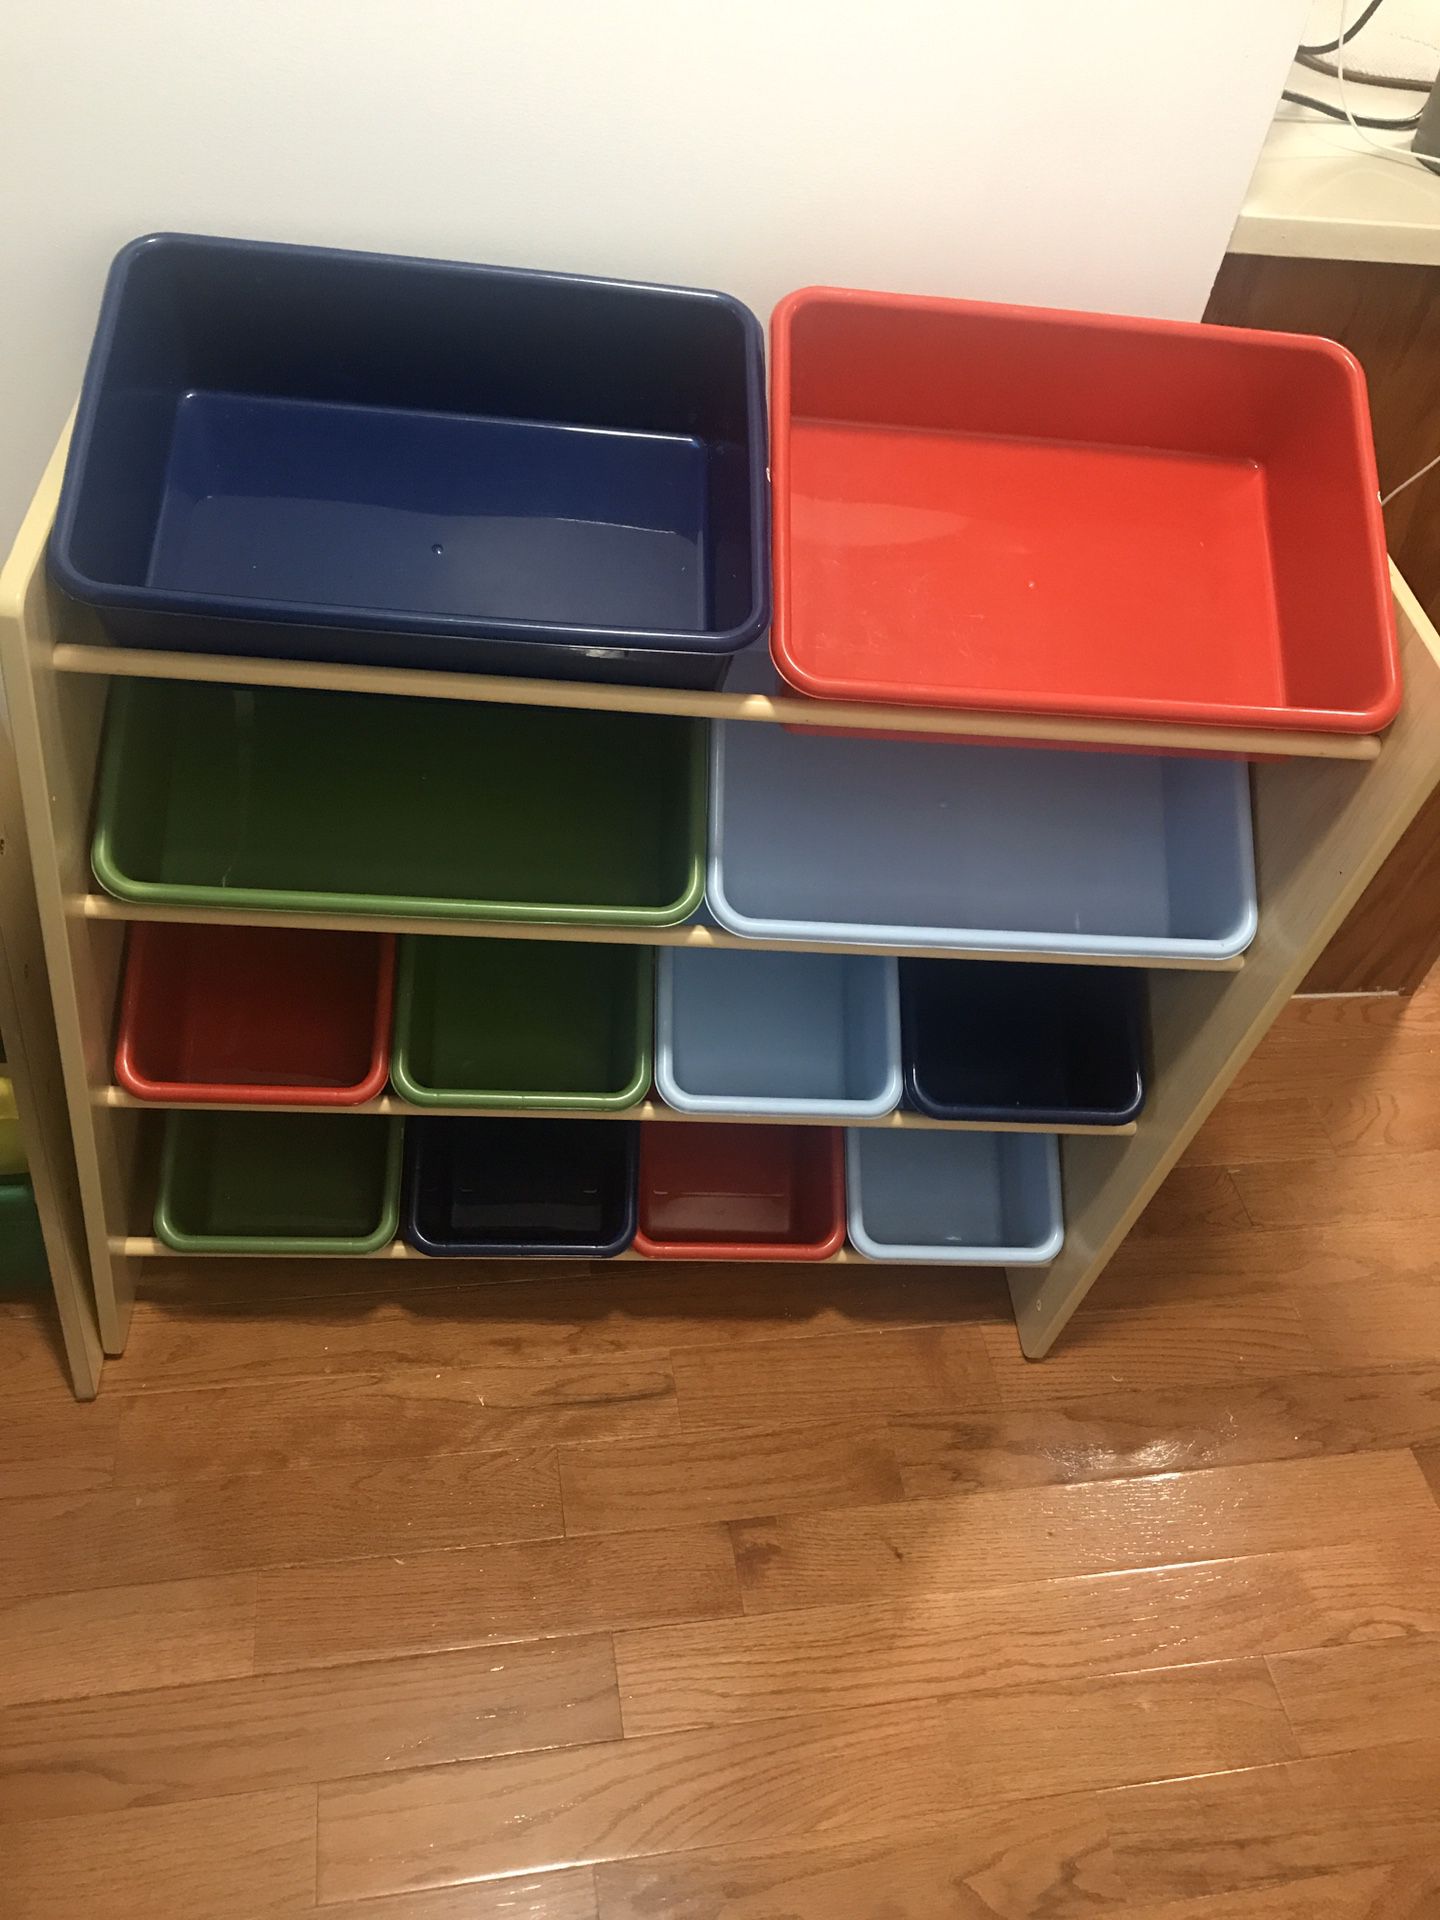 Kids toy shelf and organizer